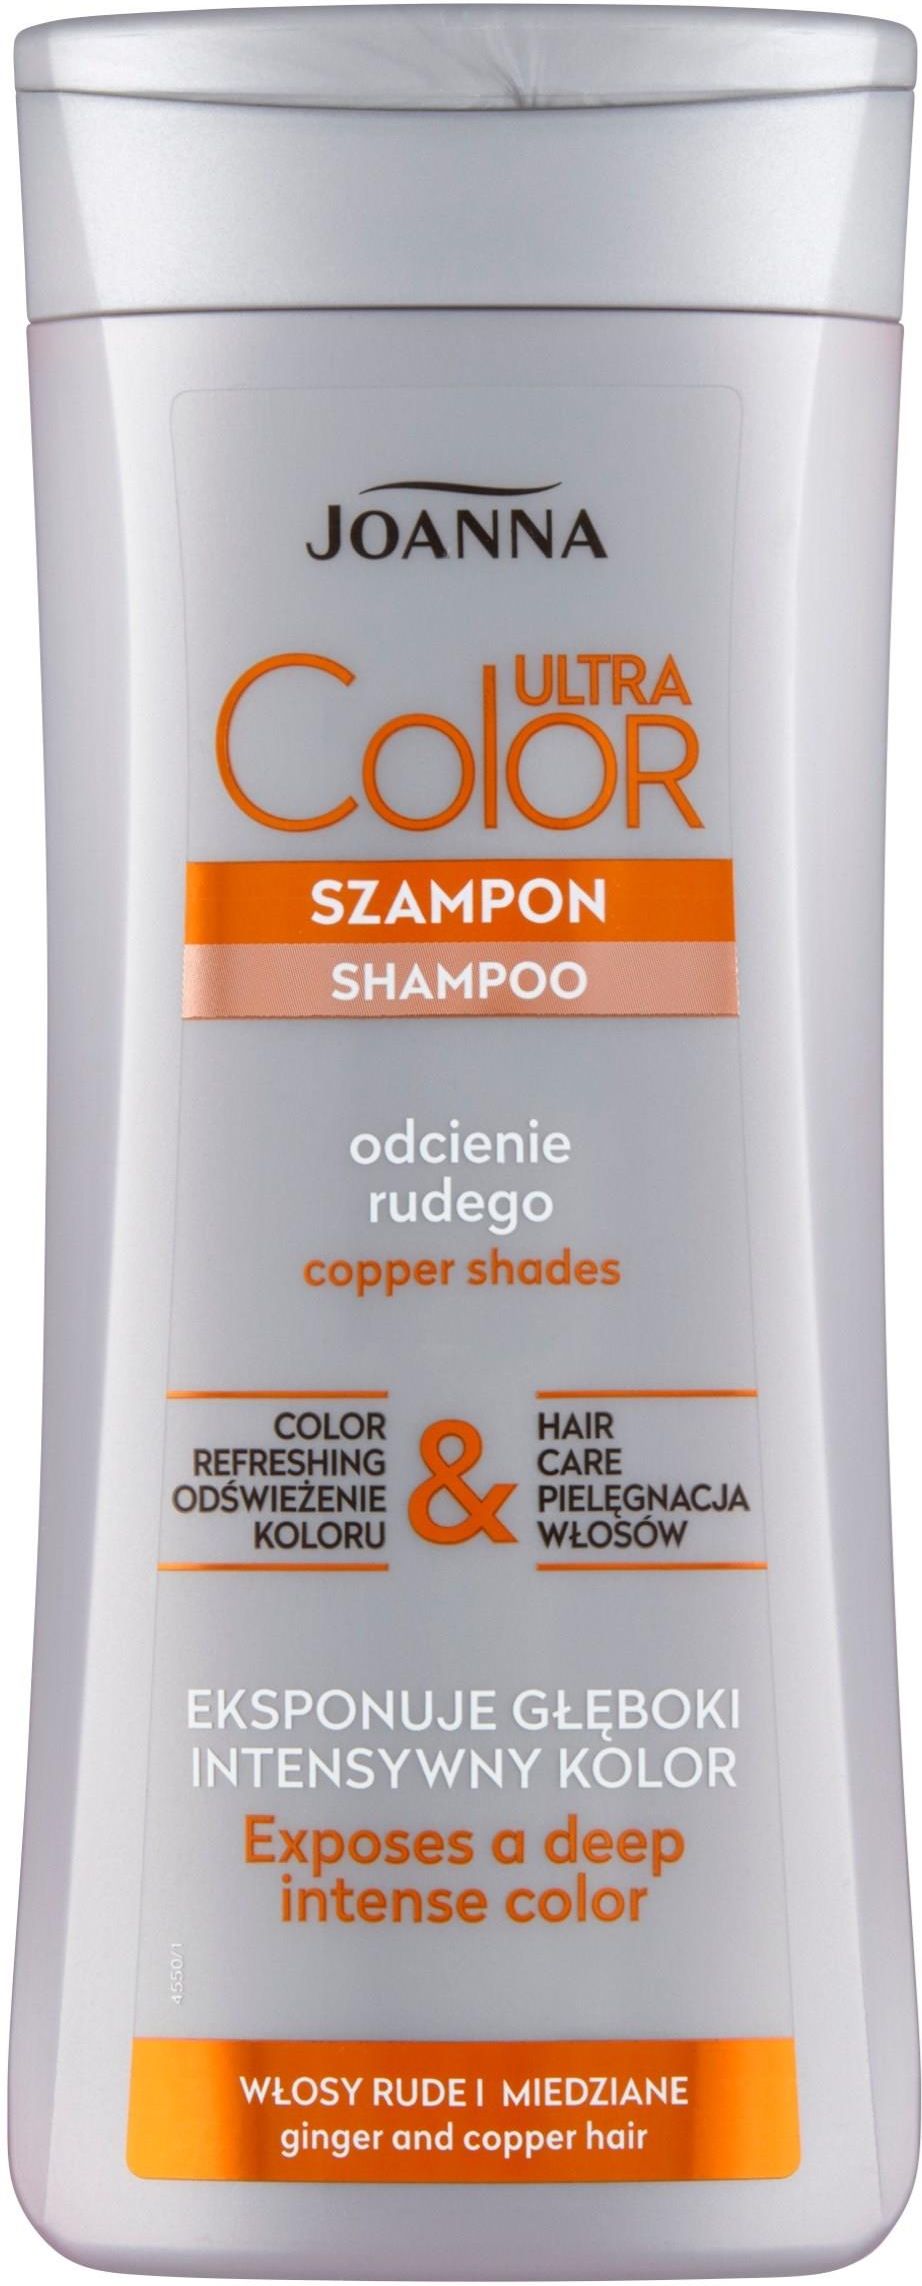 szampon do włosów rudych pat&rub